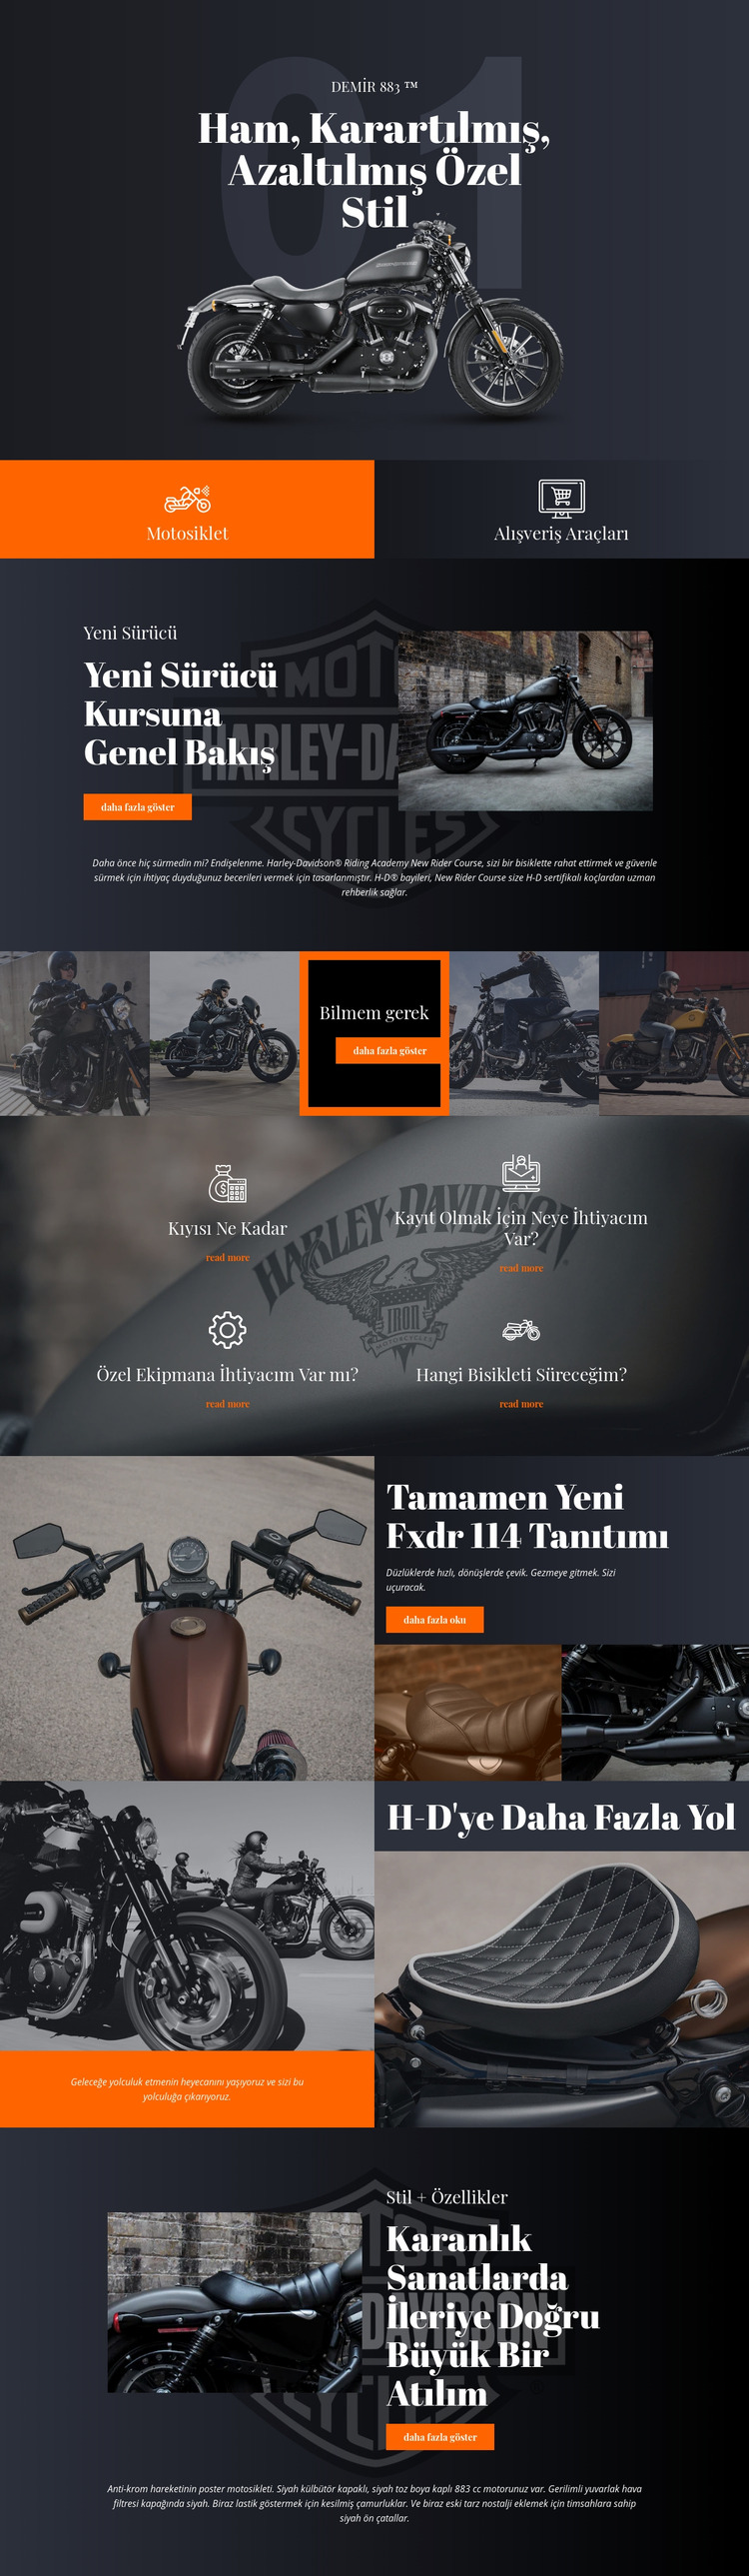 Harley Davidson Joomla Şablonu